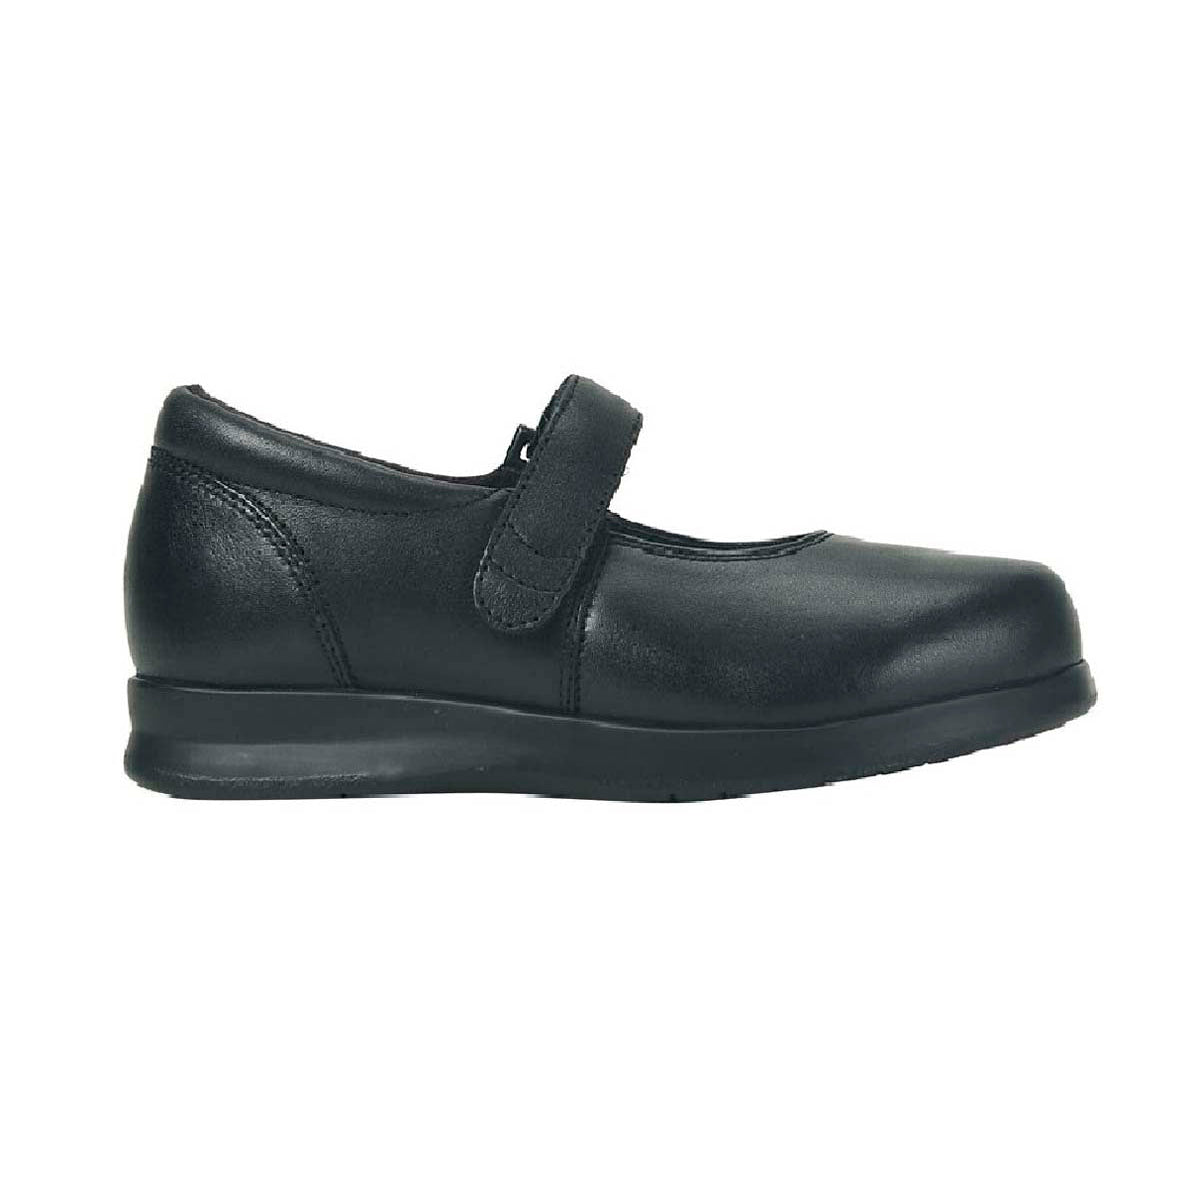 DREW BLOOM II WOMEN CASUAL SHOE IN BLACK CALF - TLW Shoes